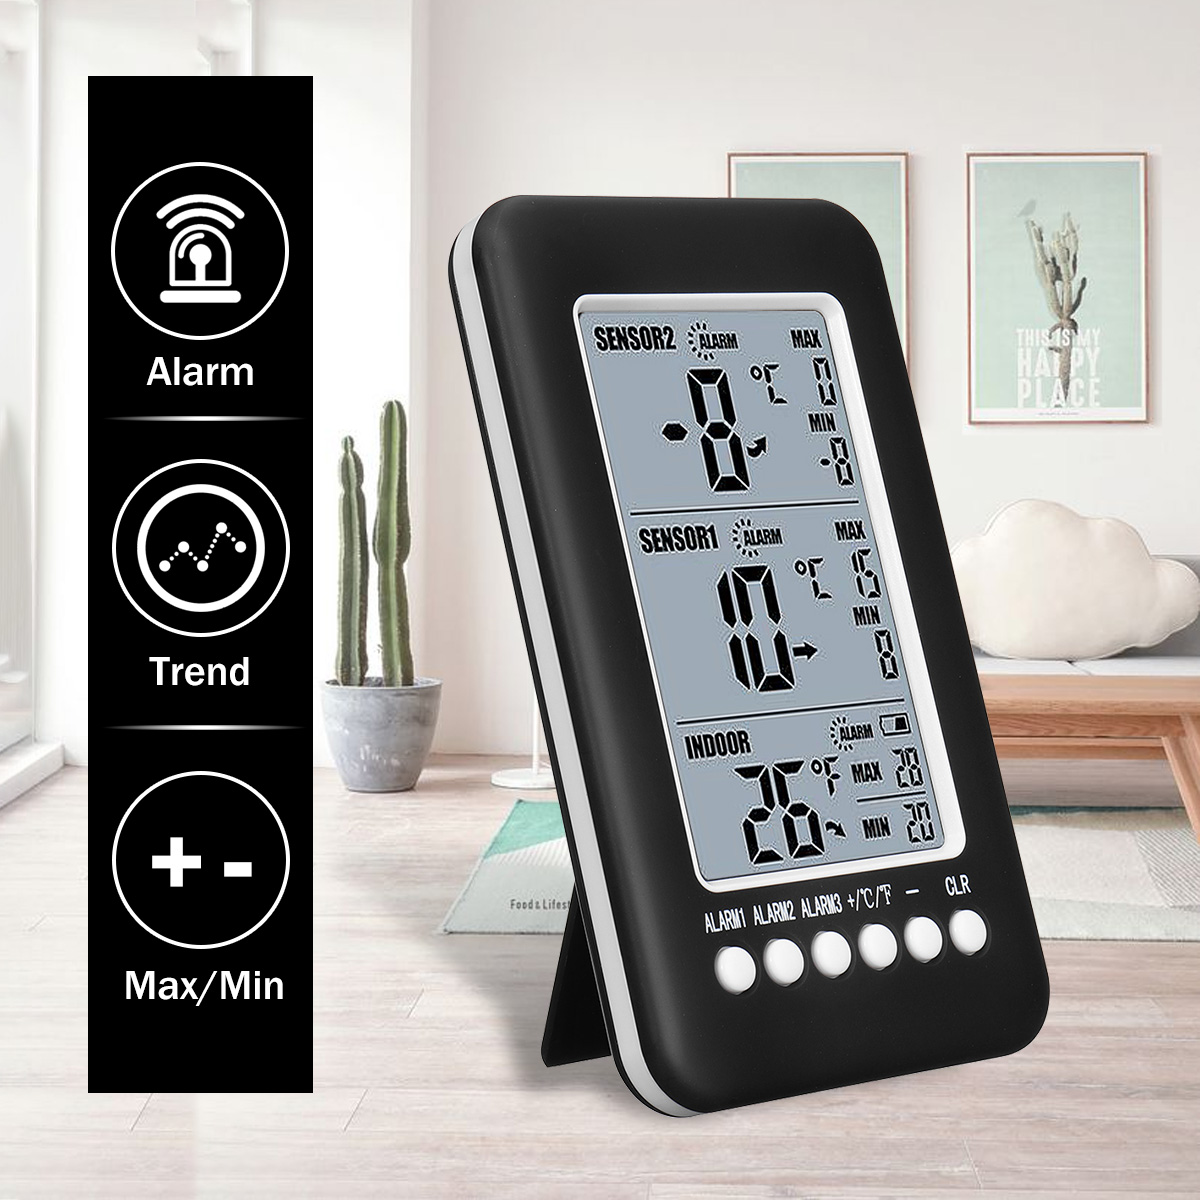 2-Sensor-Wireless-Freezer-Alarm-Digital-Thermometer-LCD-screen-Indoor-Outdoor-1317889-2